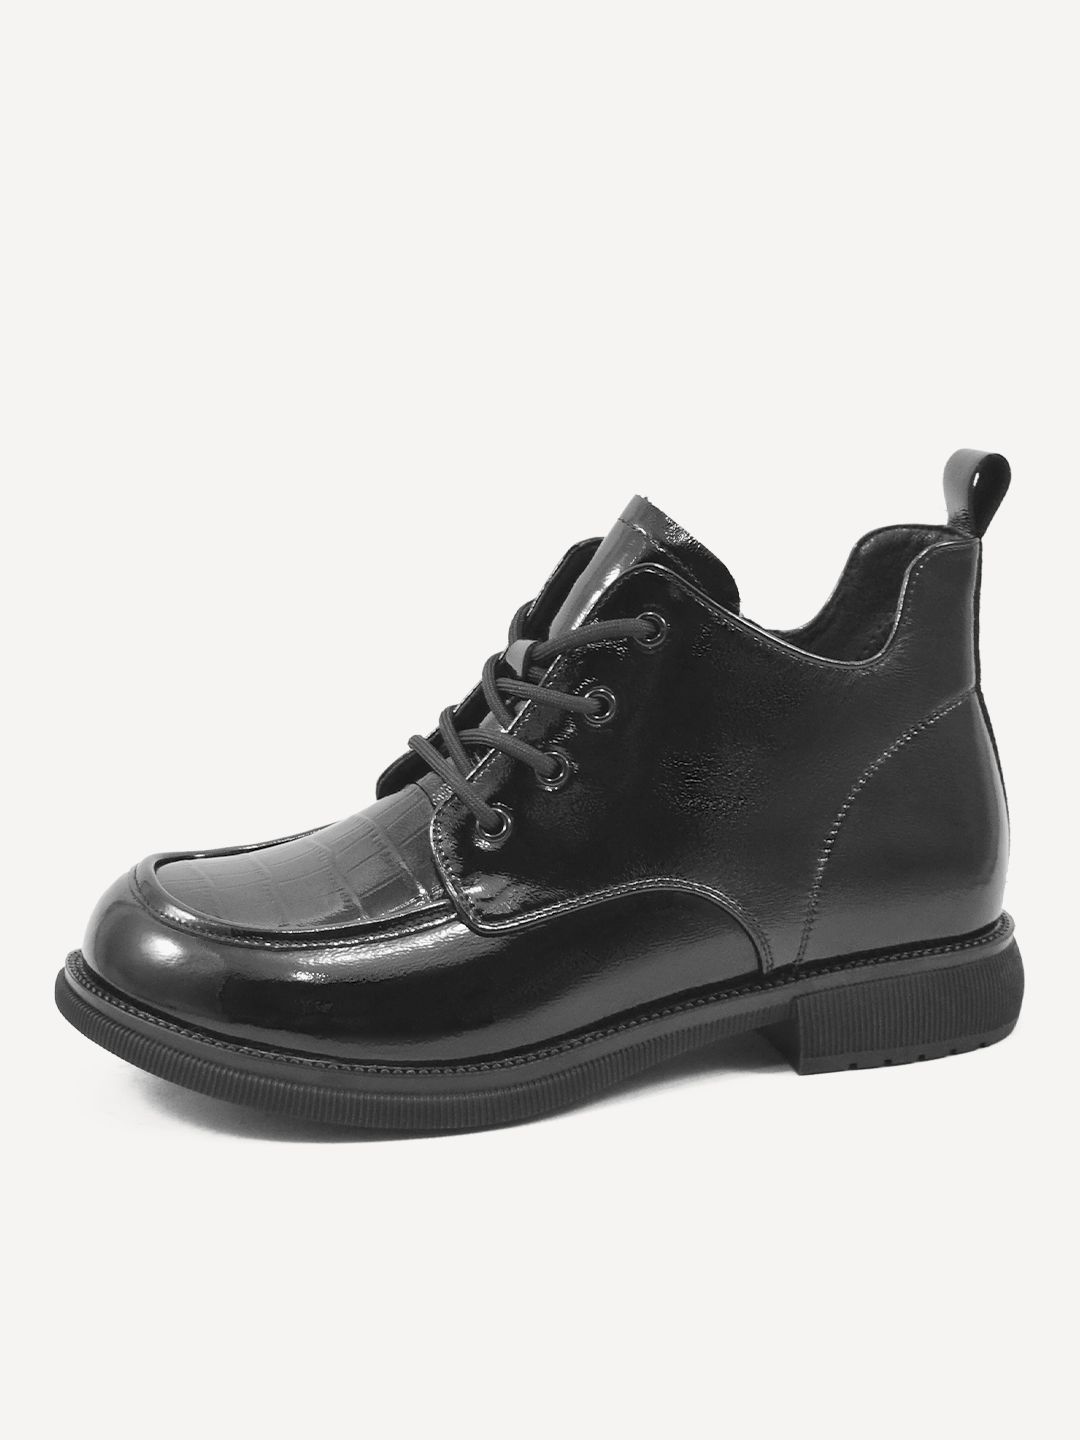 Черные женские ботинки Baden CV316-010 размера 39 по российской системе.